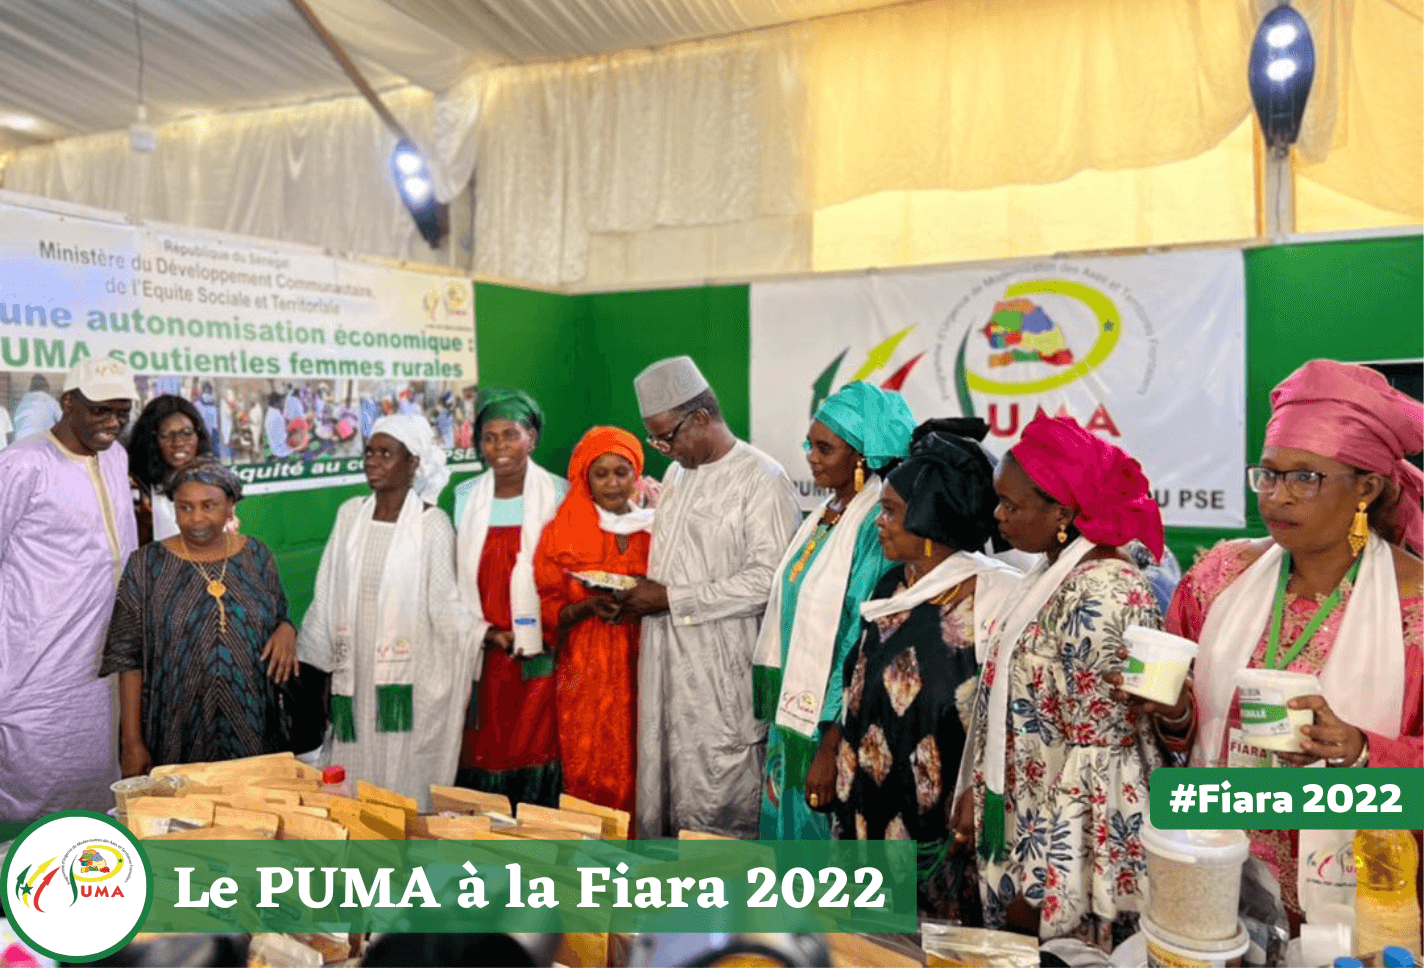 FIARA 2022 – Le coordonnateur du PUMA Moussa Sow salue la qualité des produits présentés par les femmes transformatrices des zones frontalières